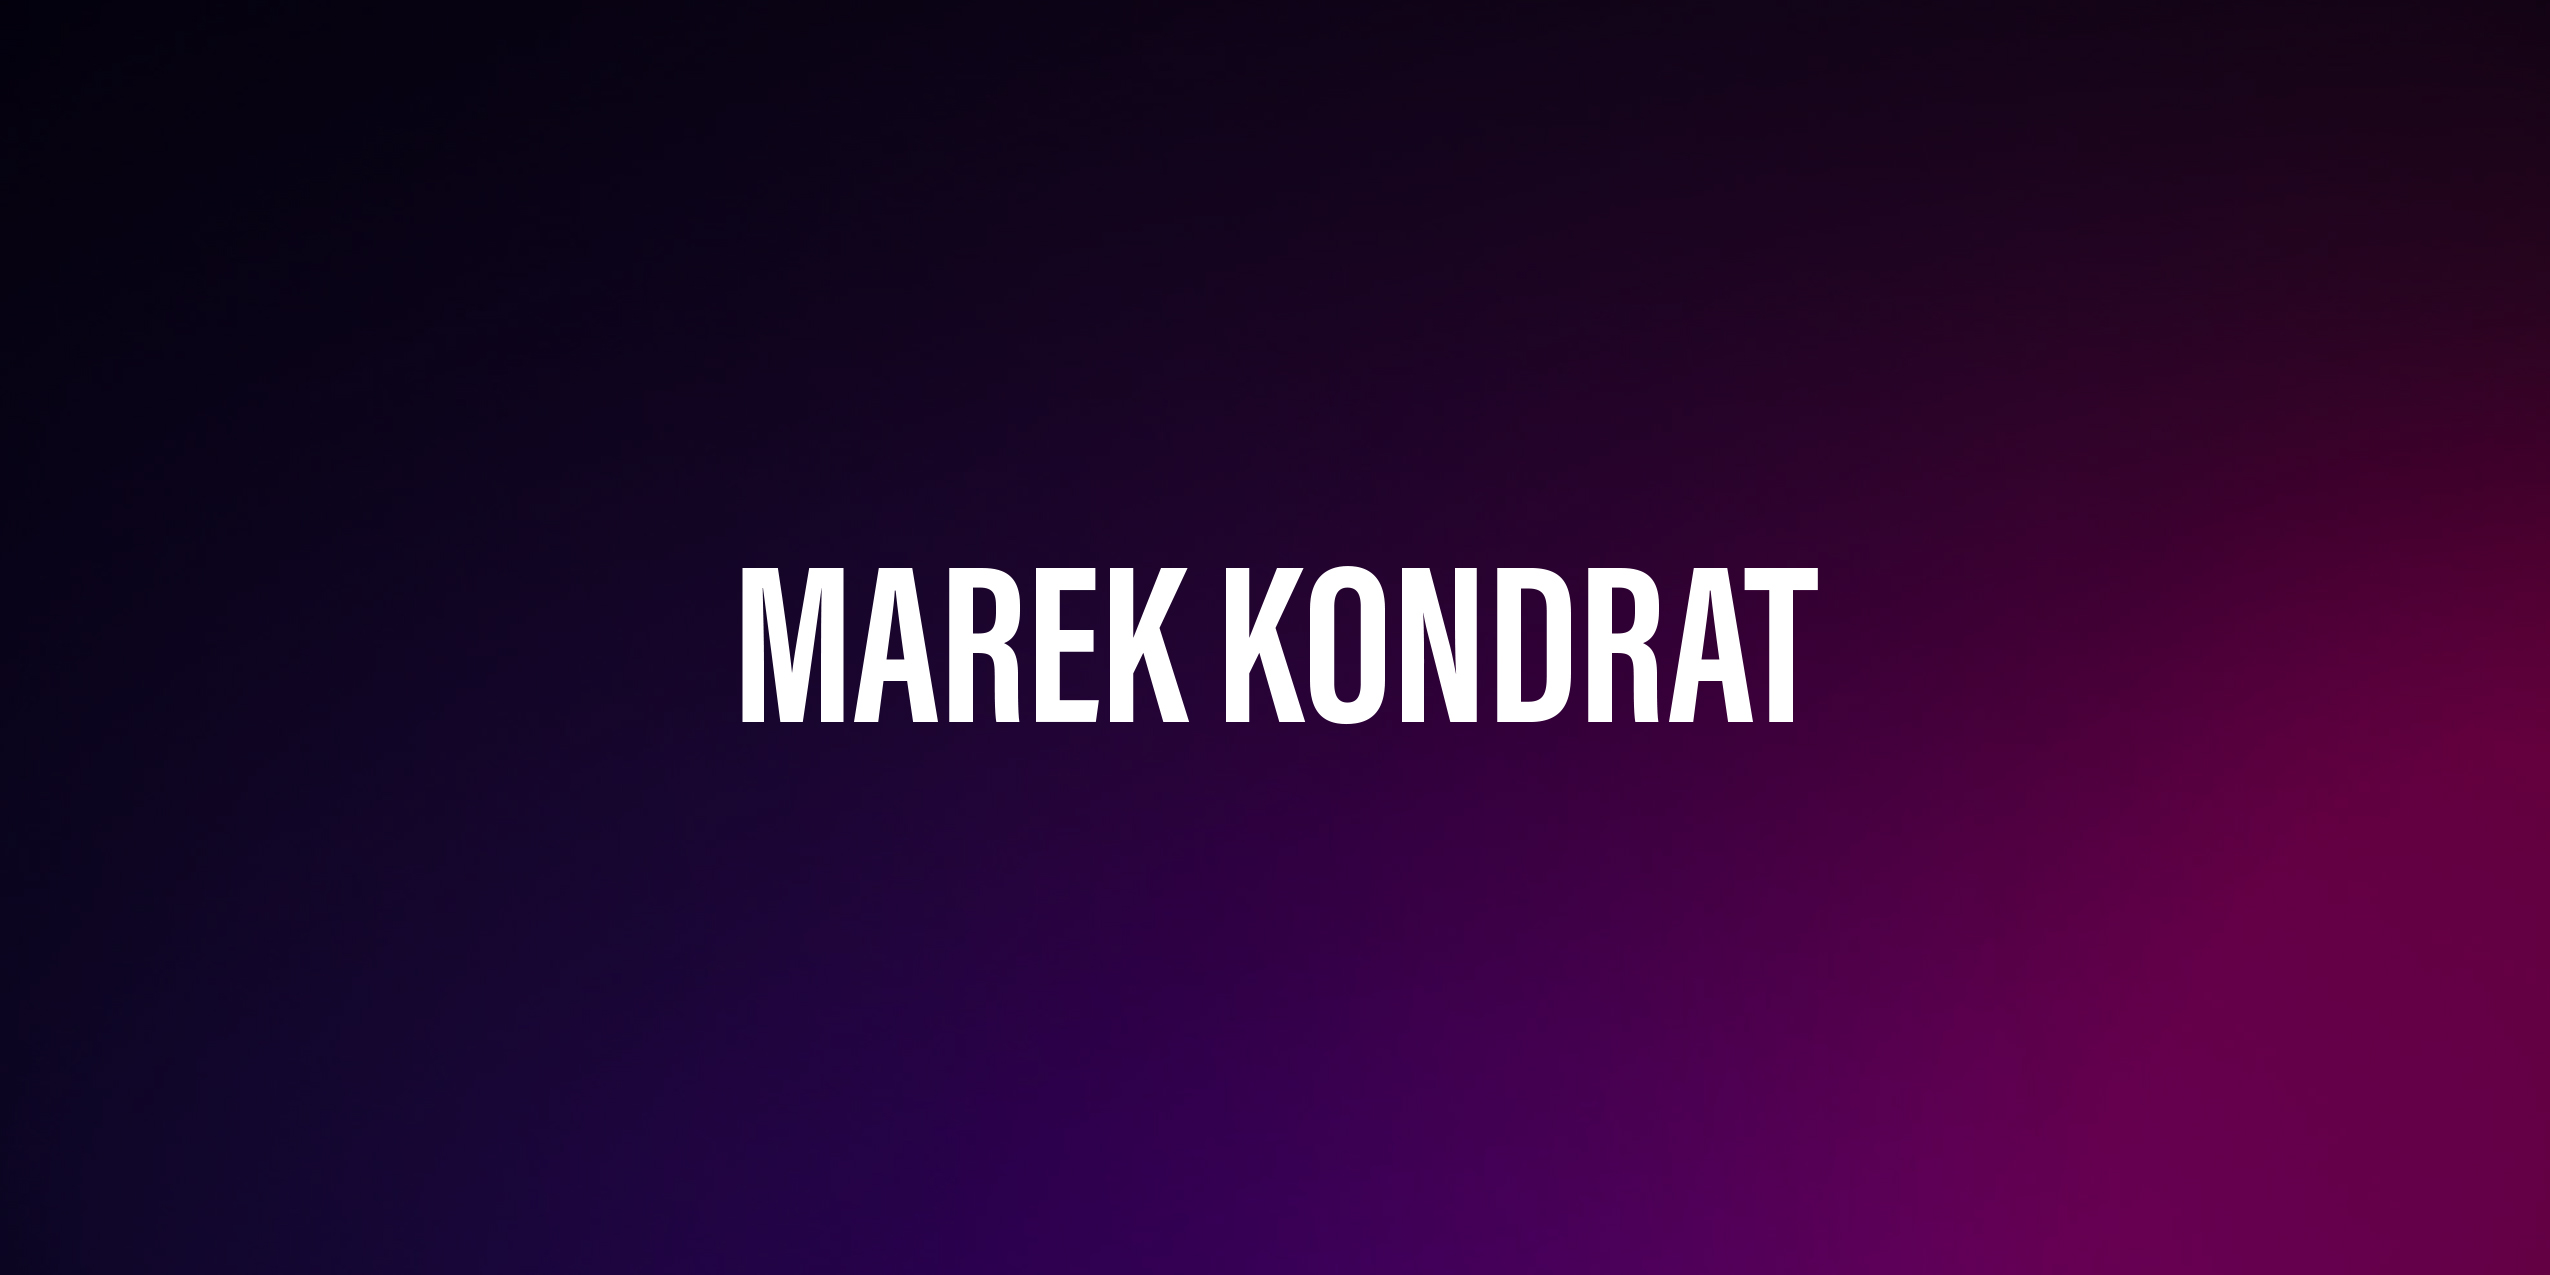 Marek Kondrat – życiorys i filmografia